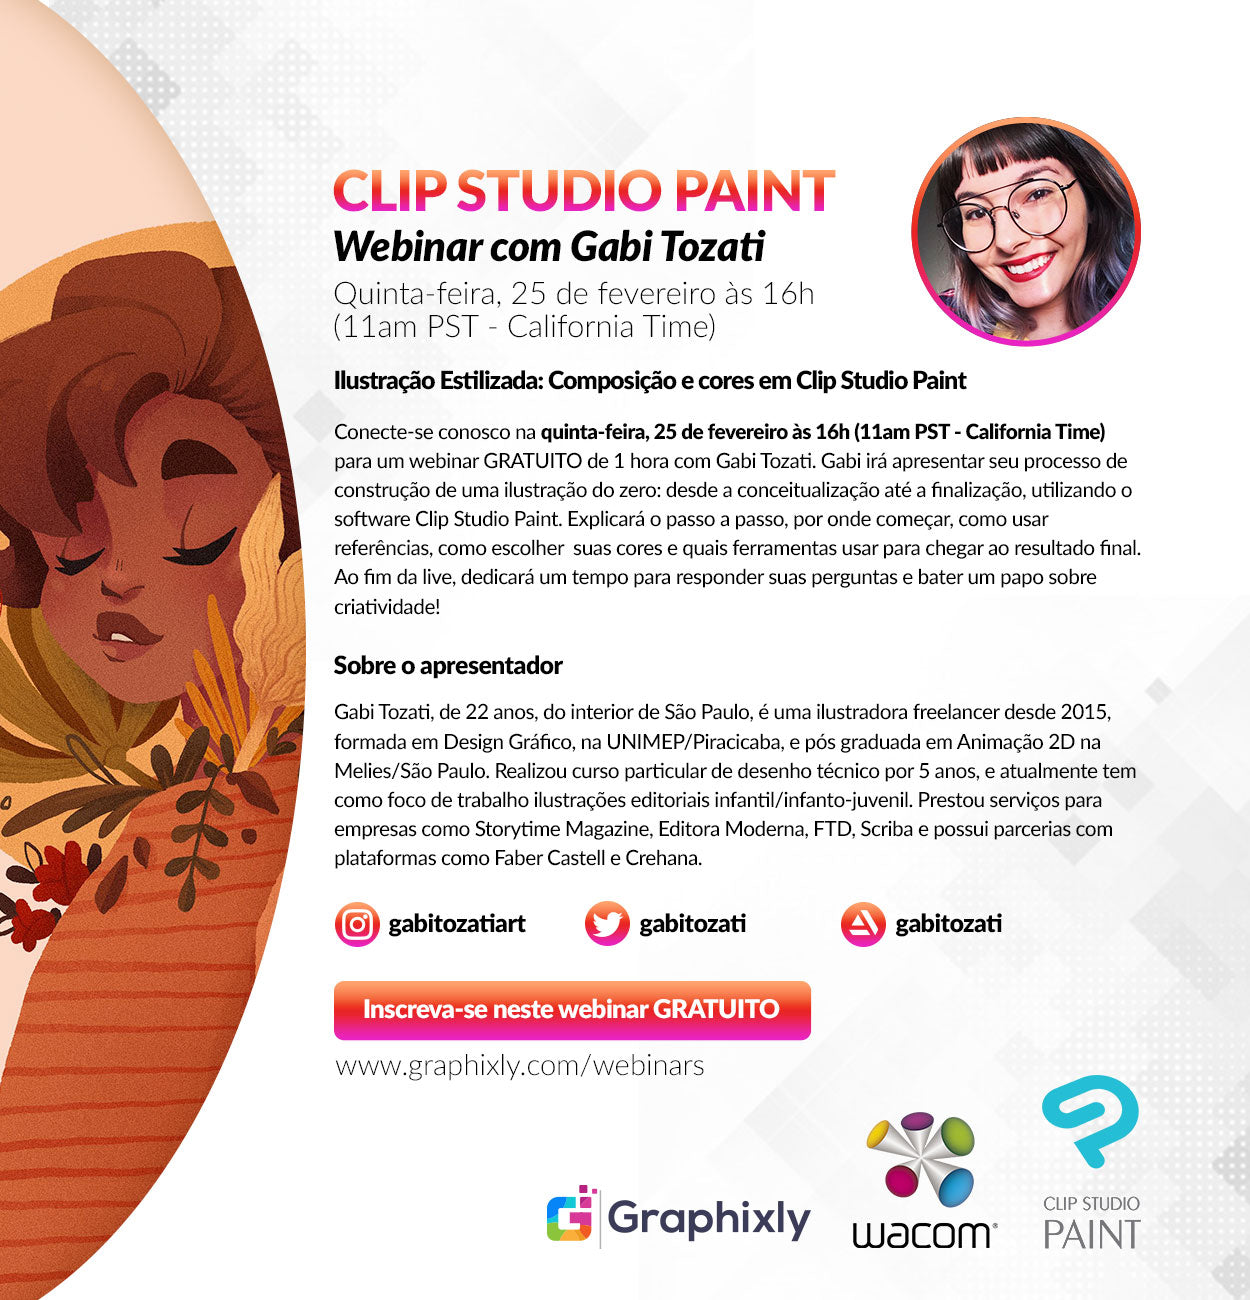 Webinar (Portuguese) - Ilustração Estilizada: Composição e cores em Clip Studio Paint com Gabi Tozati